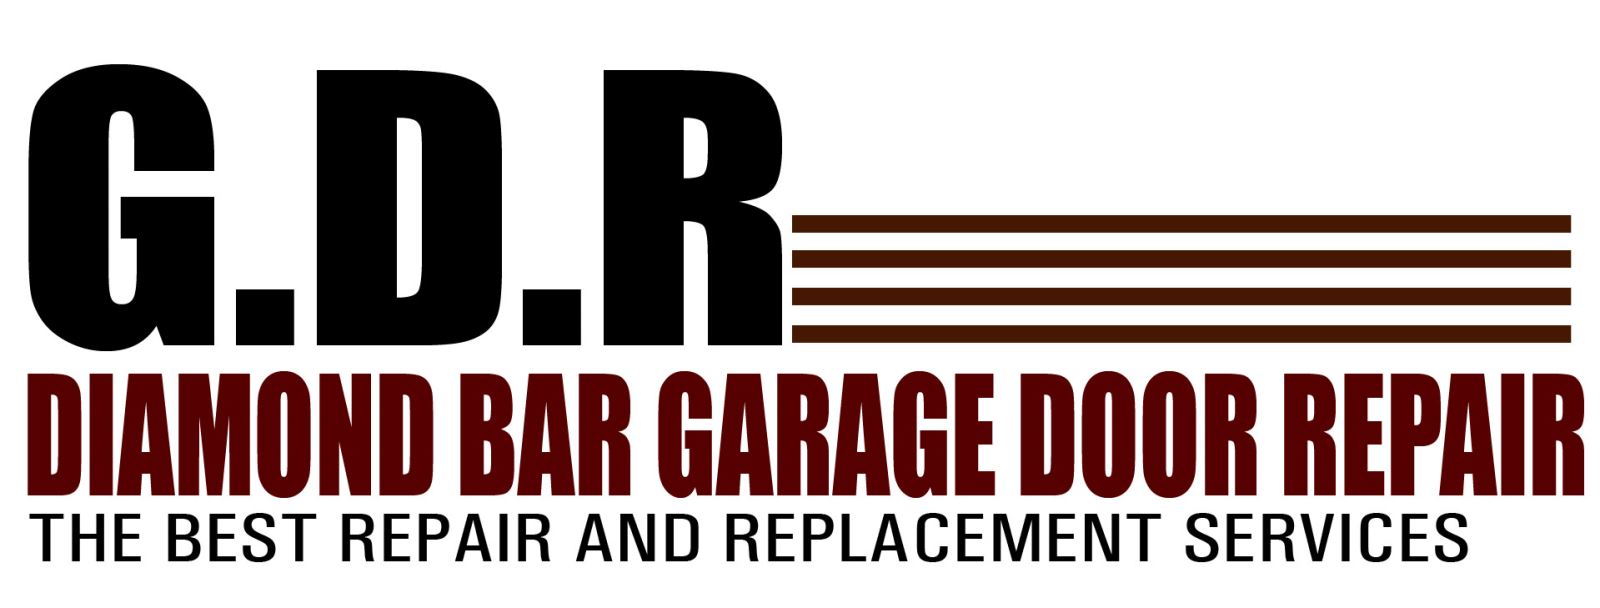 Garage Door Opener Diamond Bar